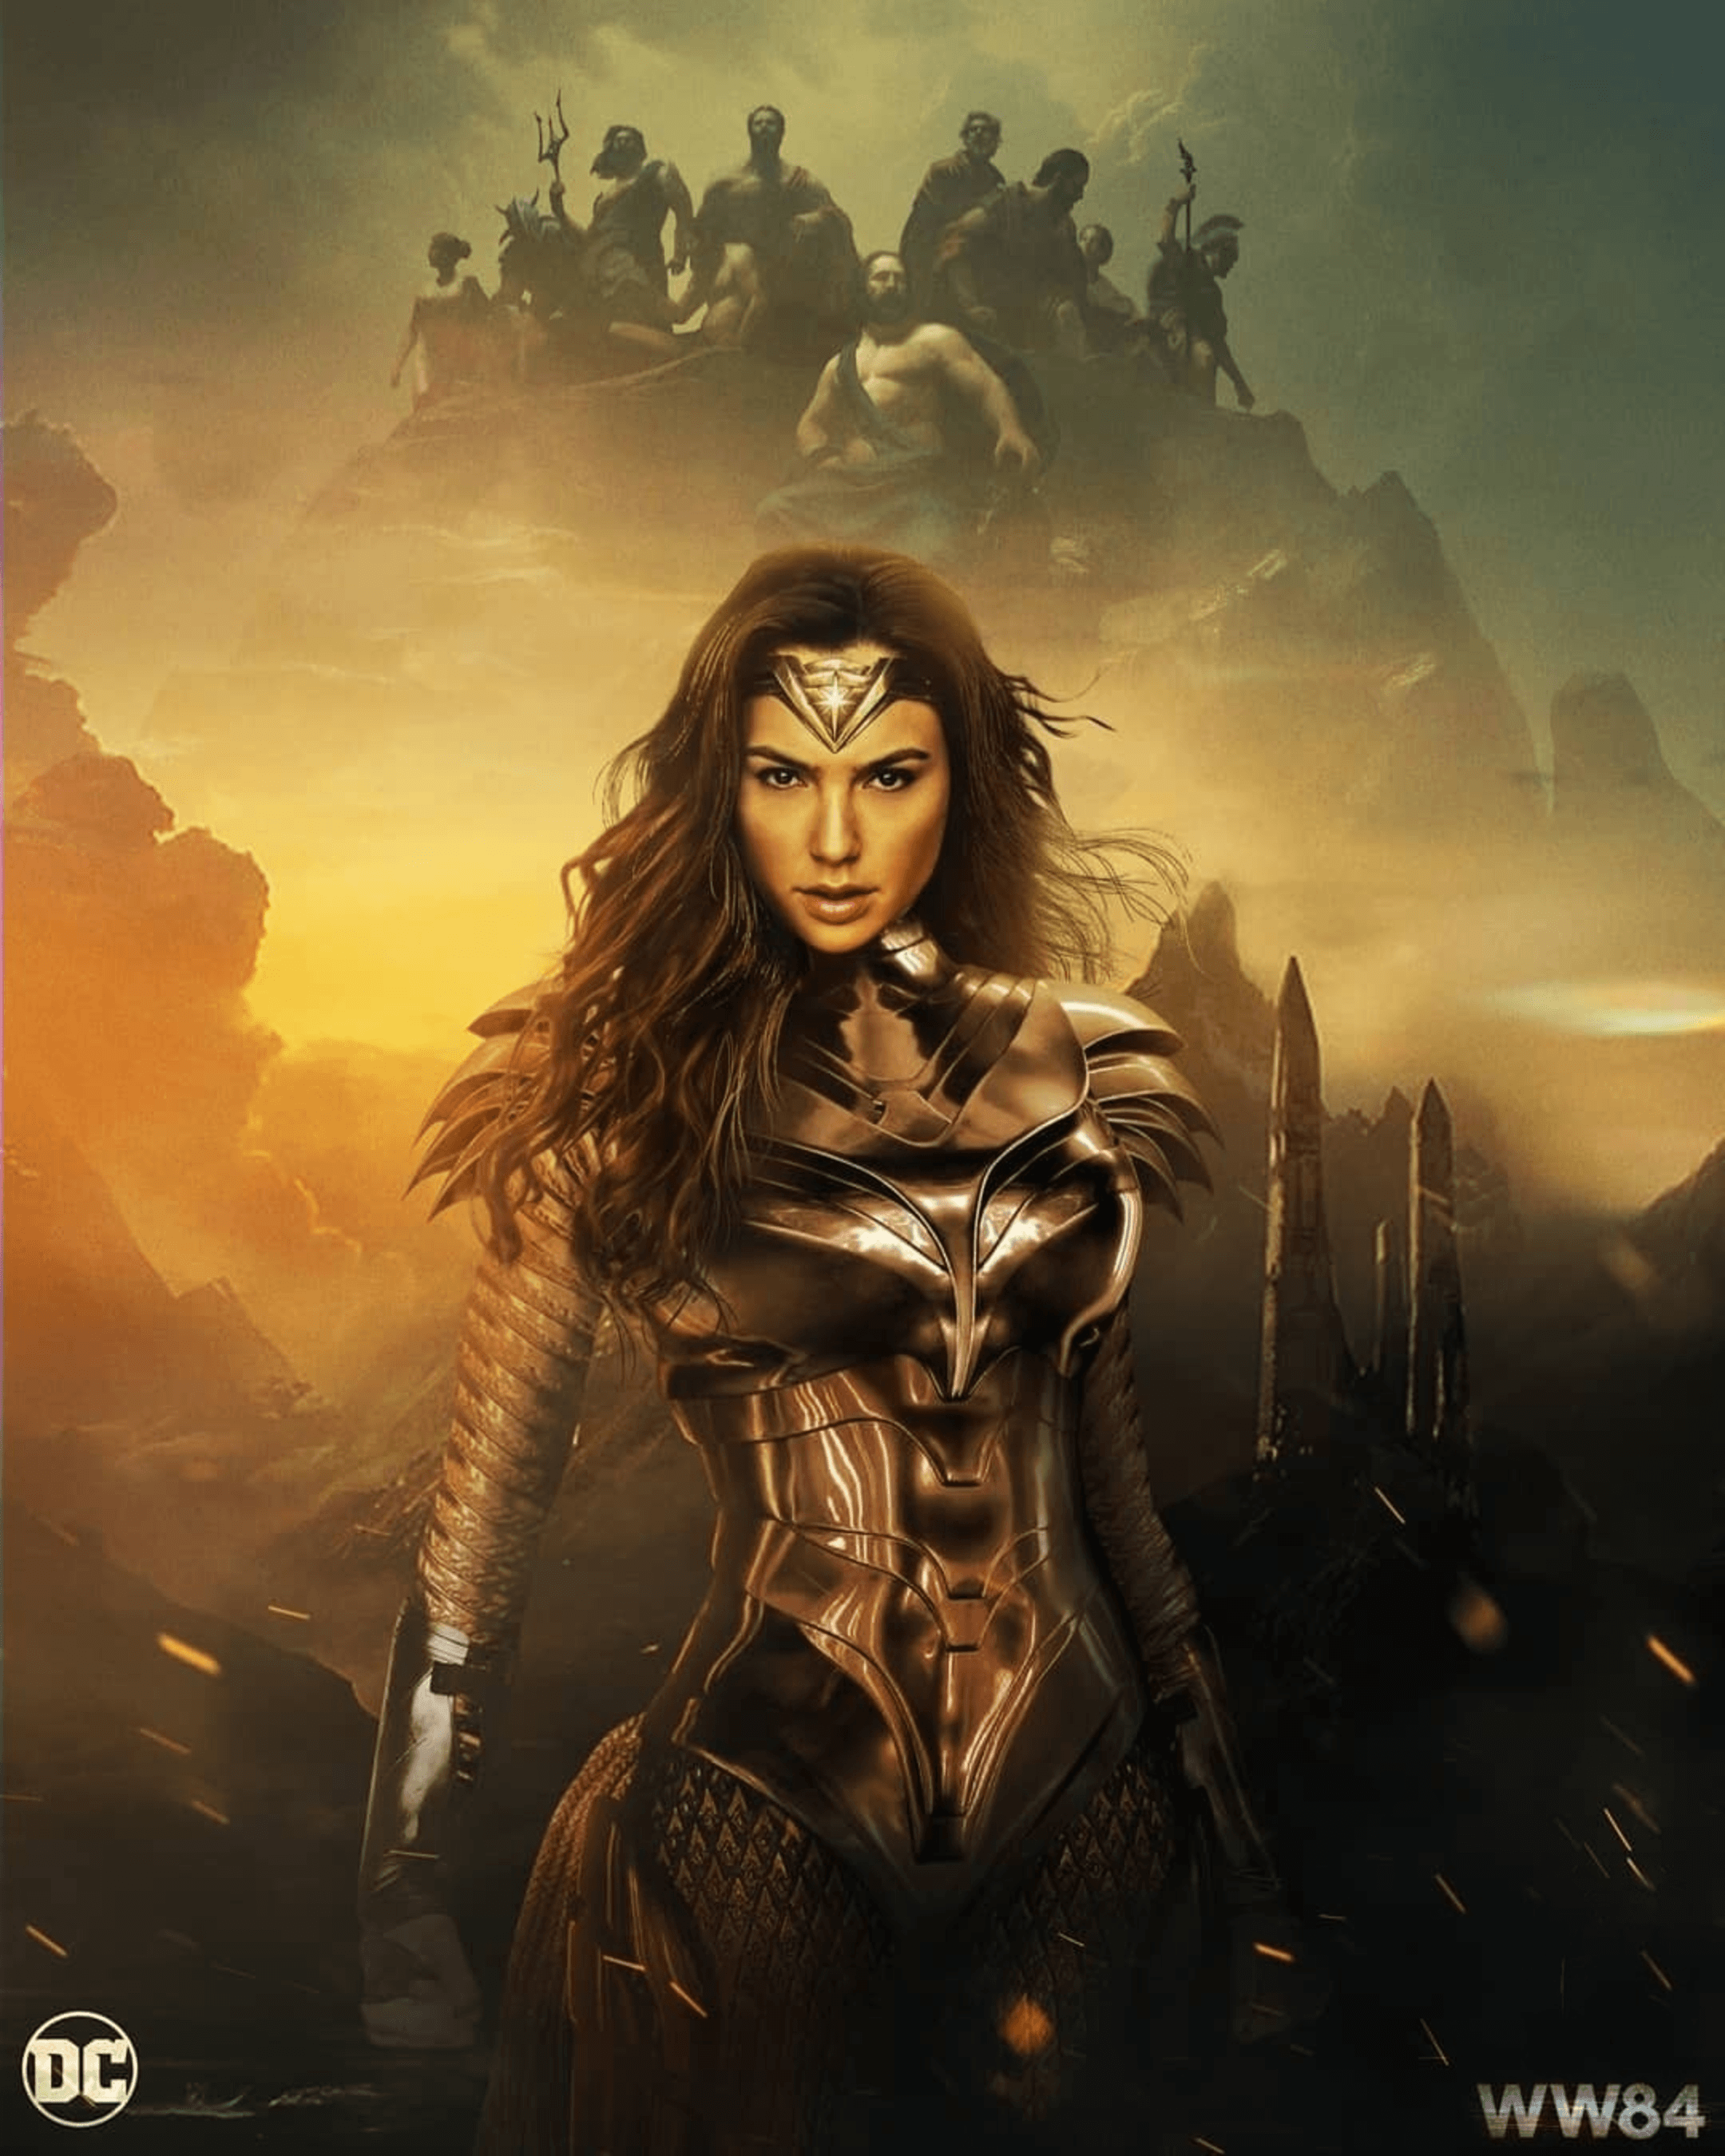 Wonder Woman 1984 (2020) [2160 2700] by Ultraraw 26. Wonder